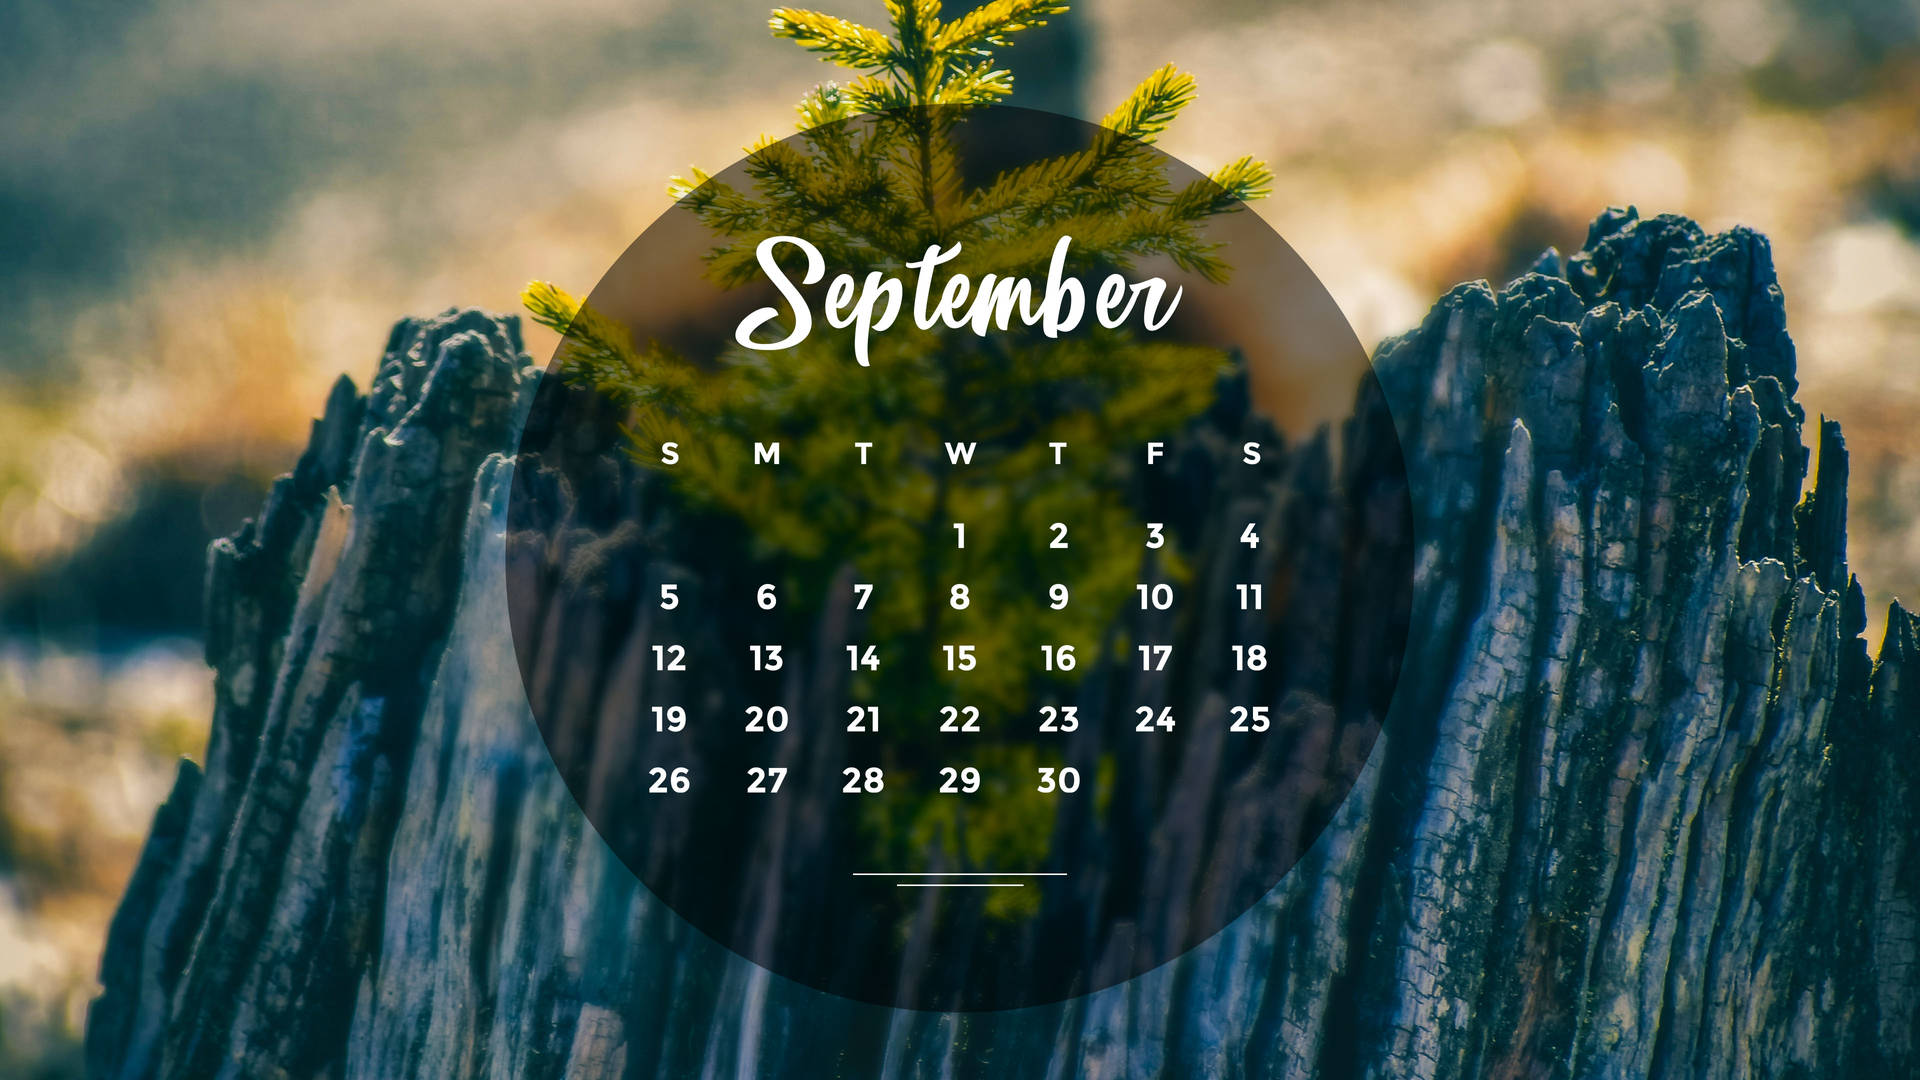 Aesthetic September 2021 Calendar